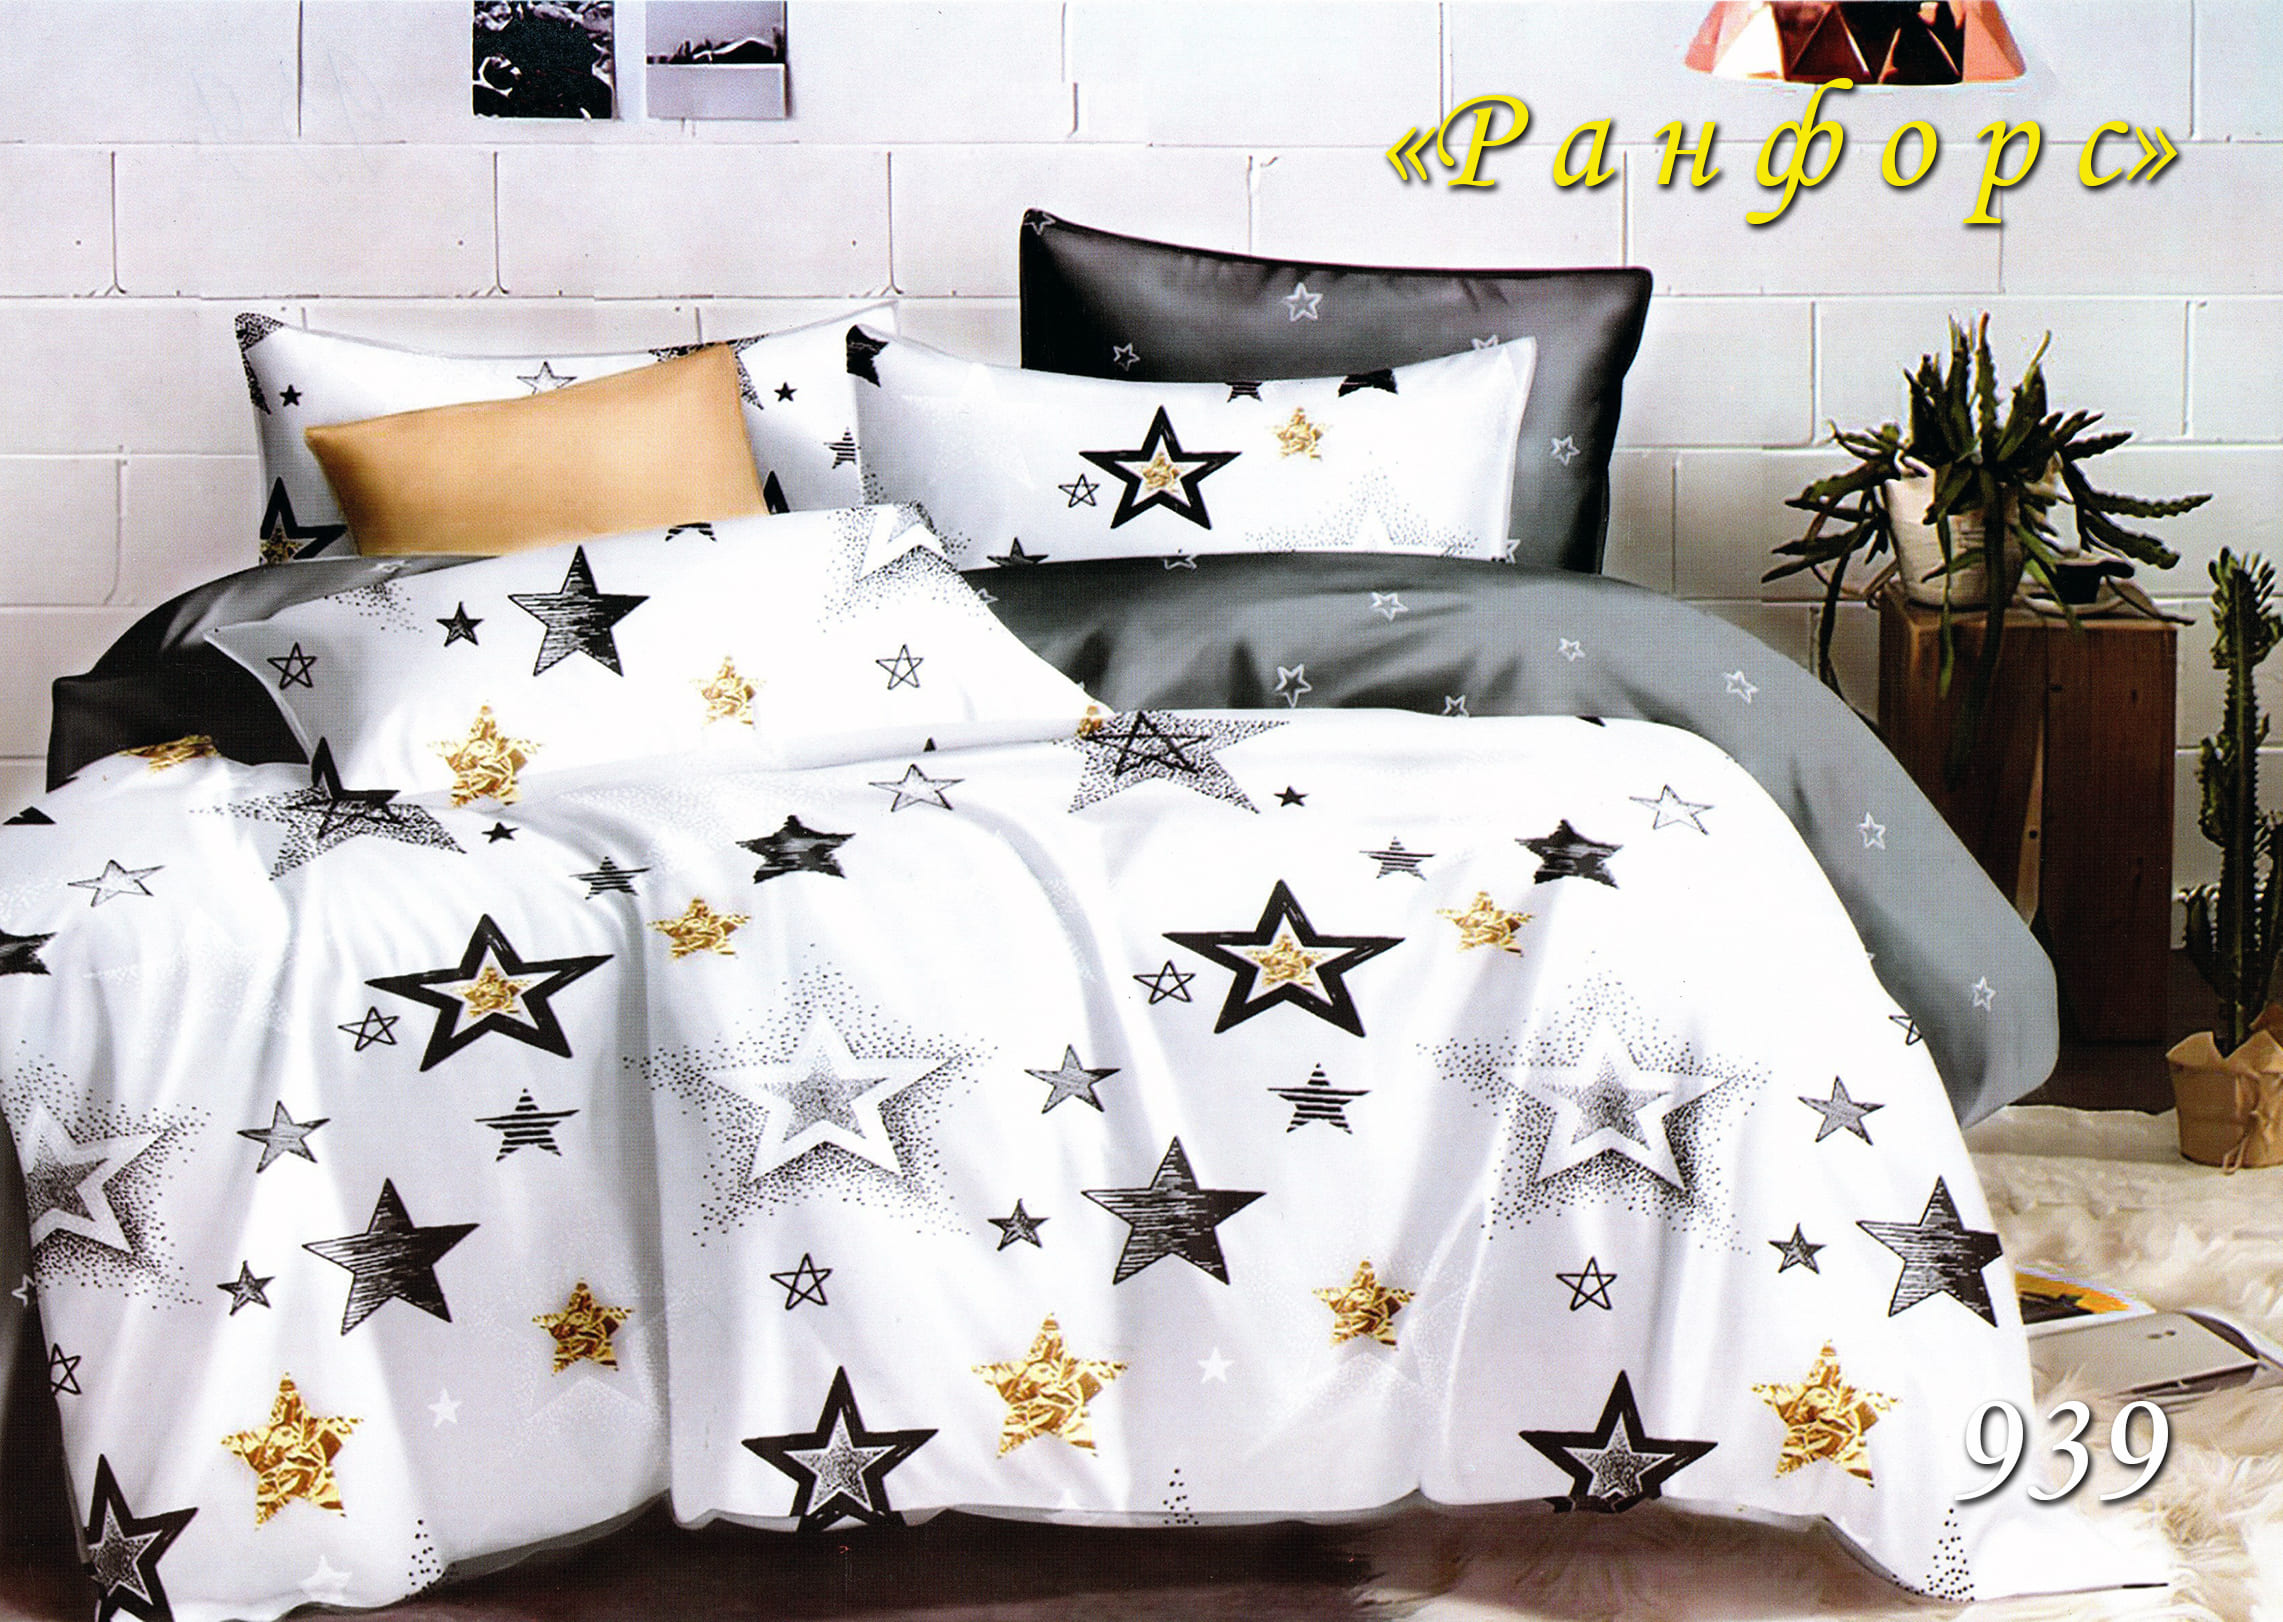 Евро постельное белье ТЕТ-А-ТЕТ 939 ранфорс (Звезды на белом)